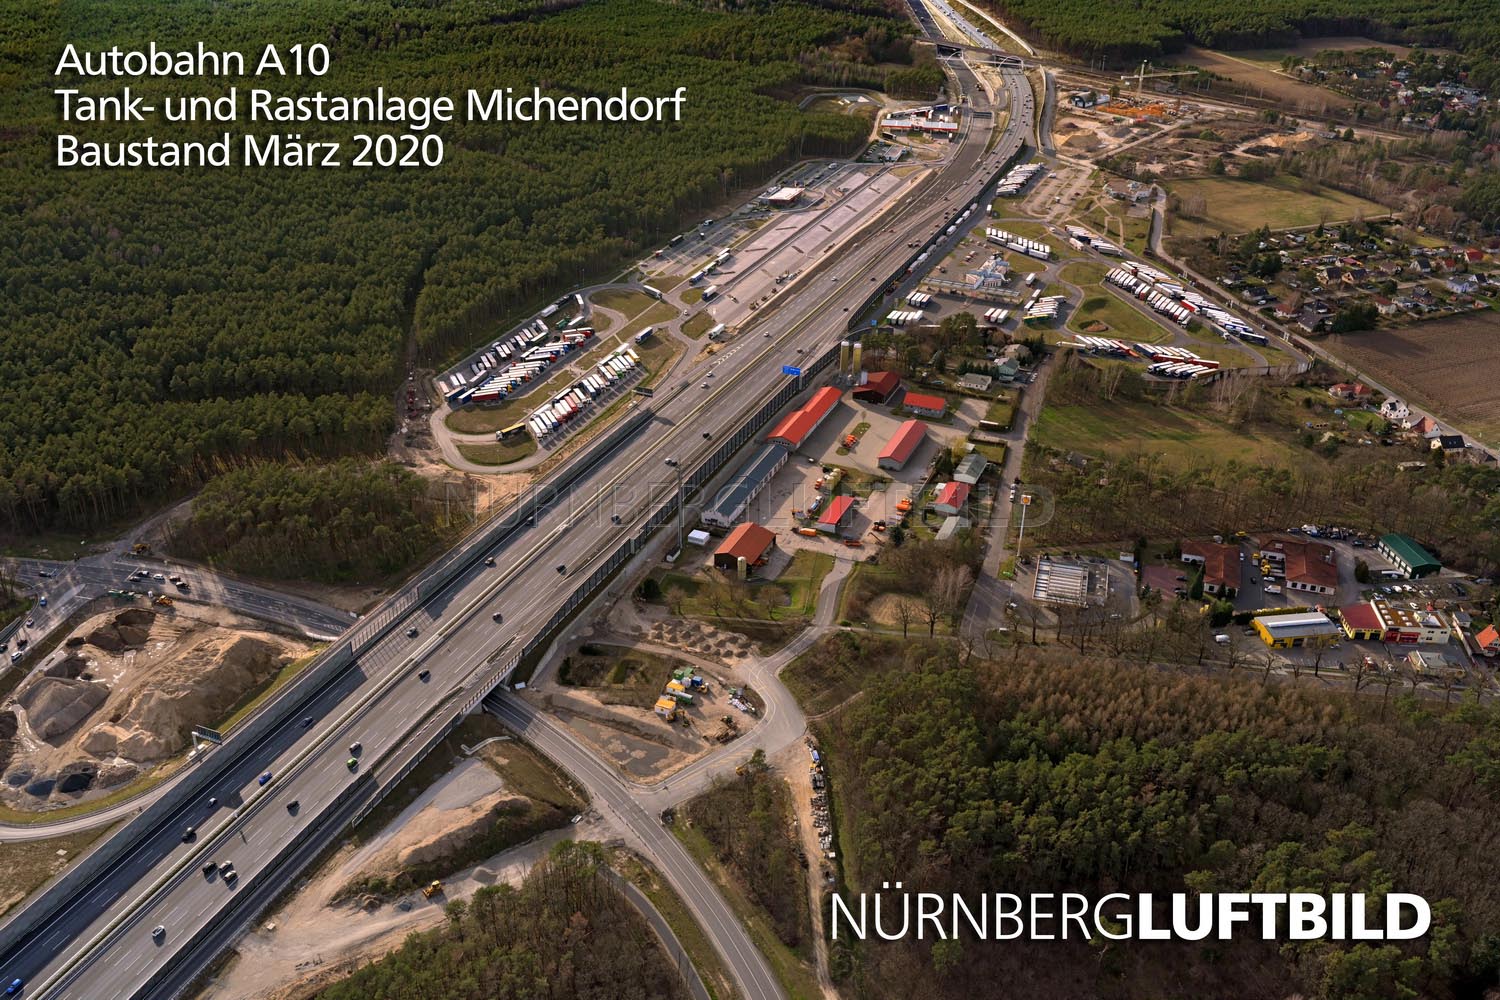 Autobahn A10, Tank- und Rastanlage Michendorf, Baustand März 2020